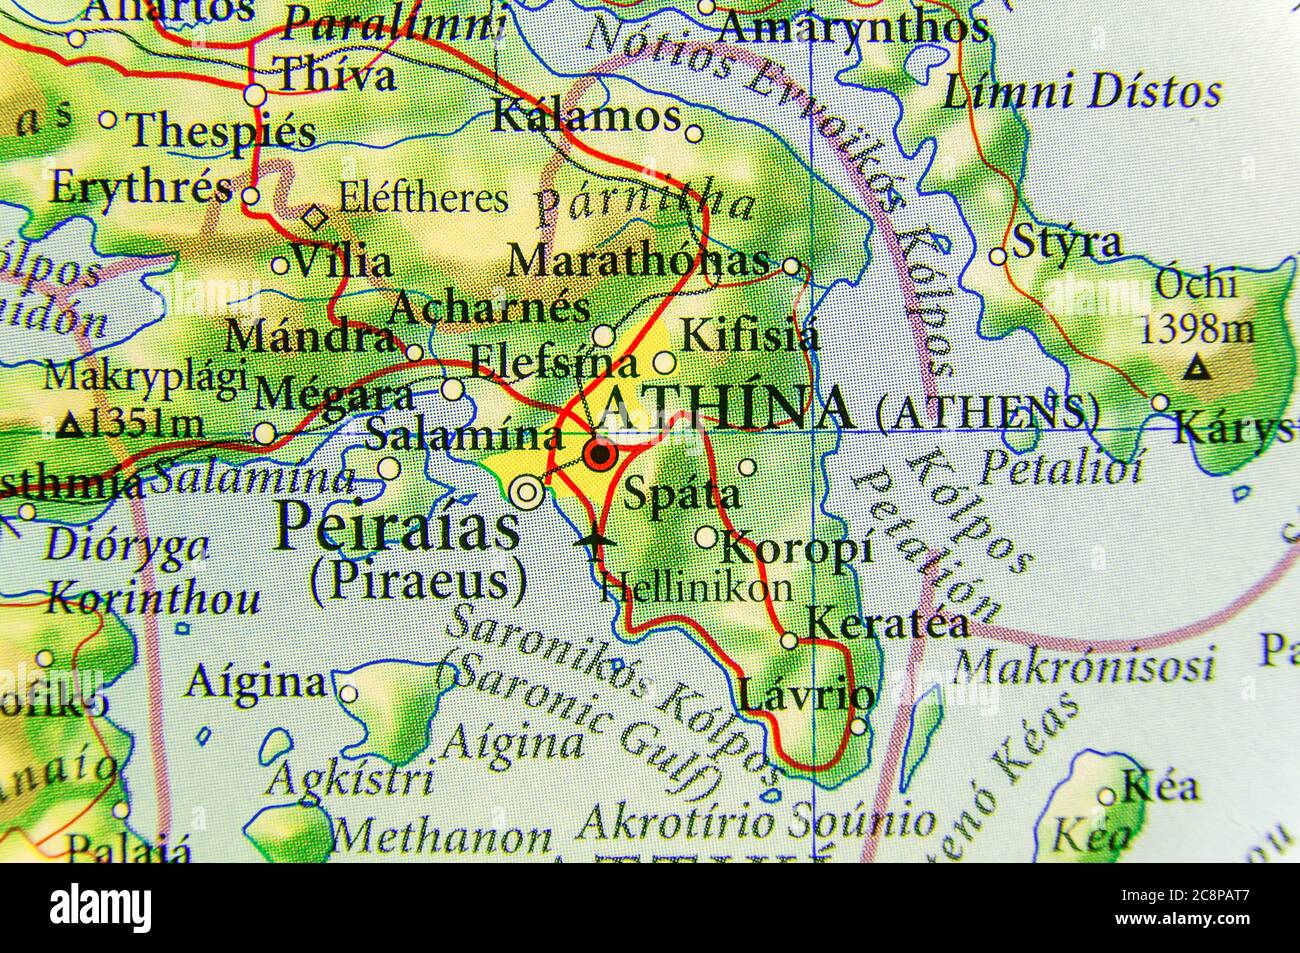 Mapa Geográfico Del País Europeo Grecia Con La Ciudad De Atenas Fotografía De Stock Alamy 9737